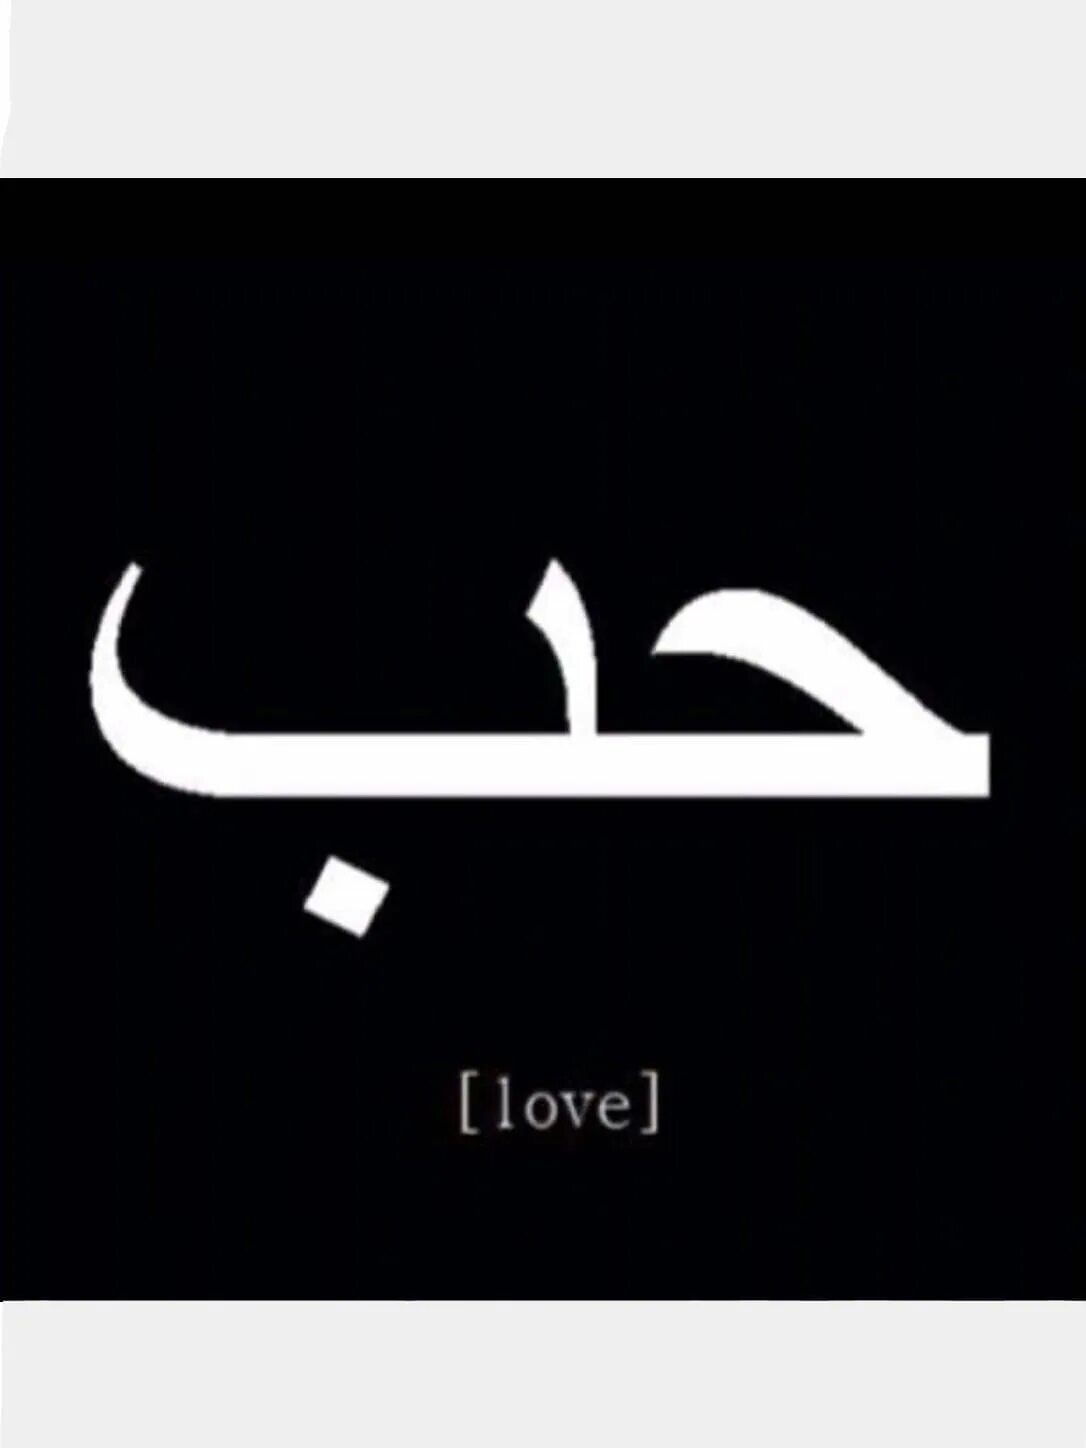 Надписи на арабском языке. Любовь на арабском. Арабские надписи. Слово любовь на арабском. Love на арабском.